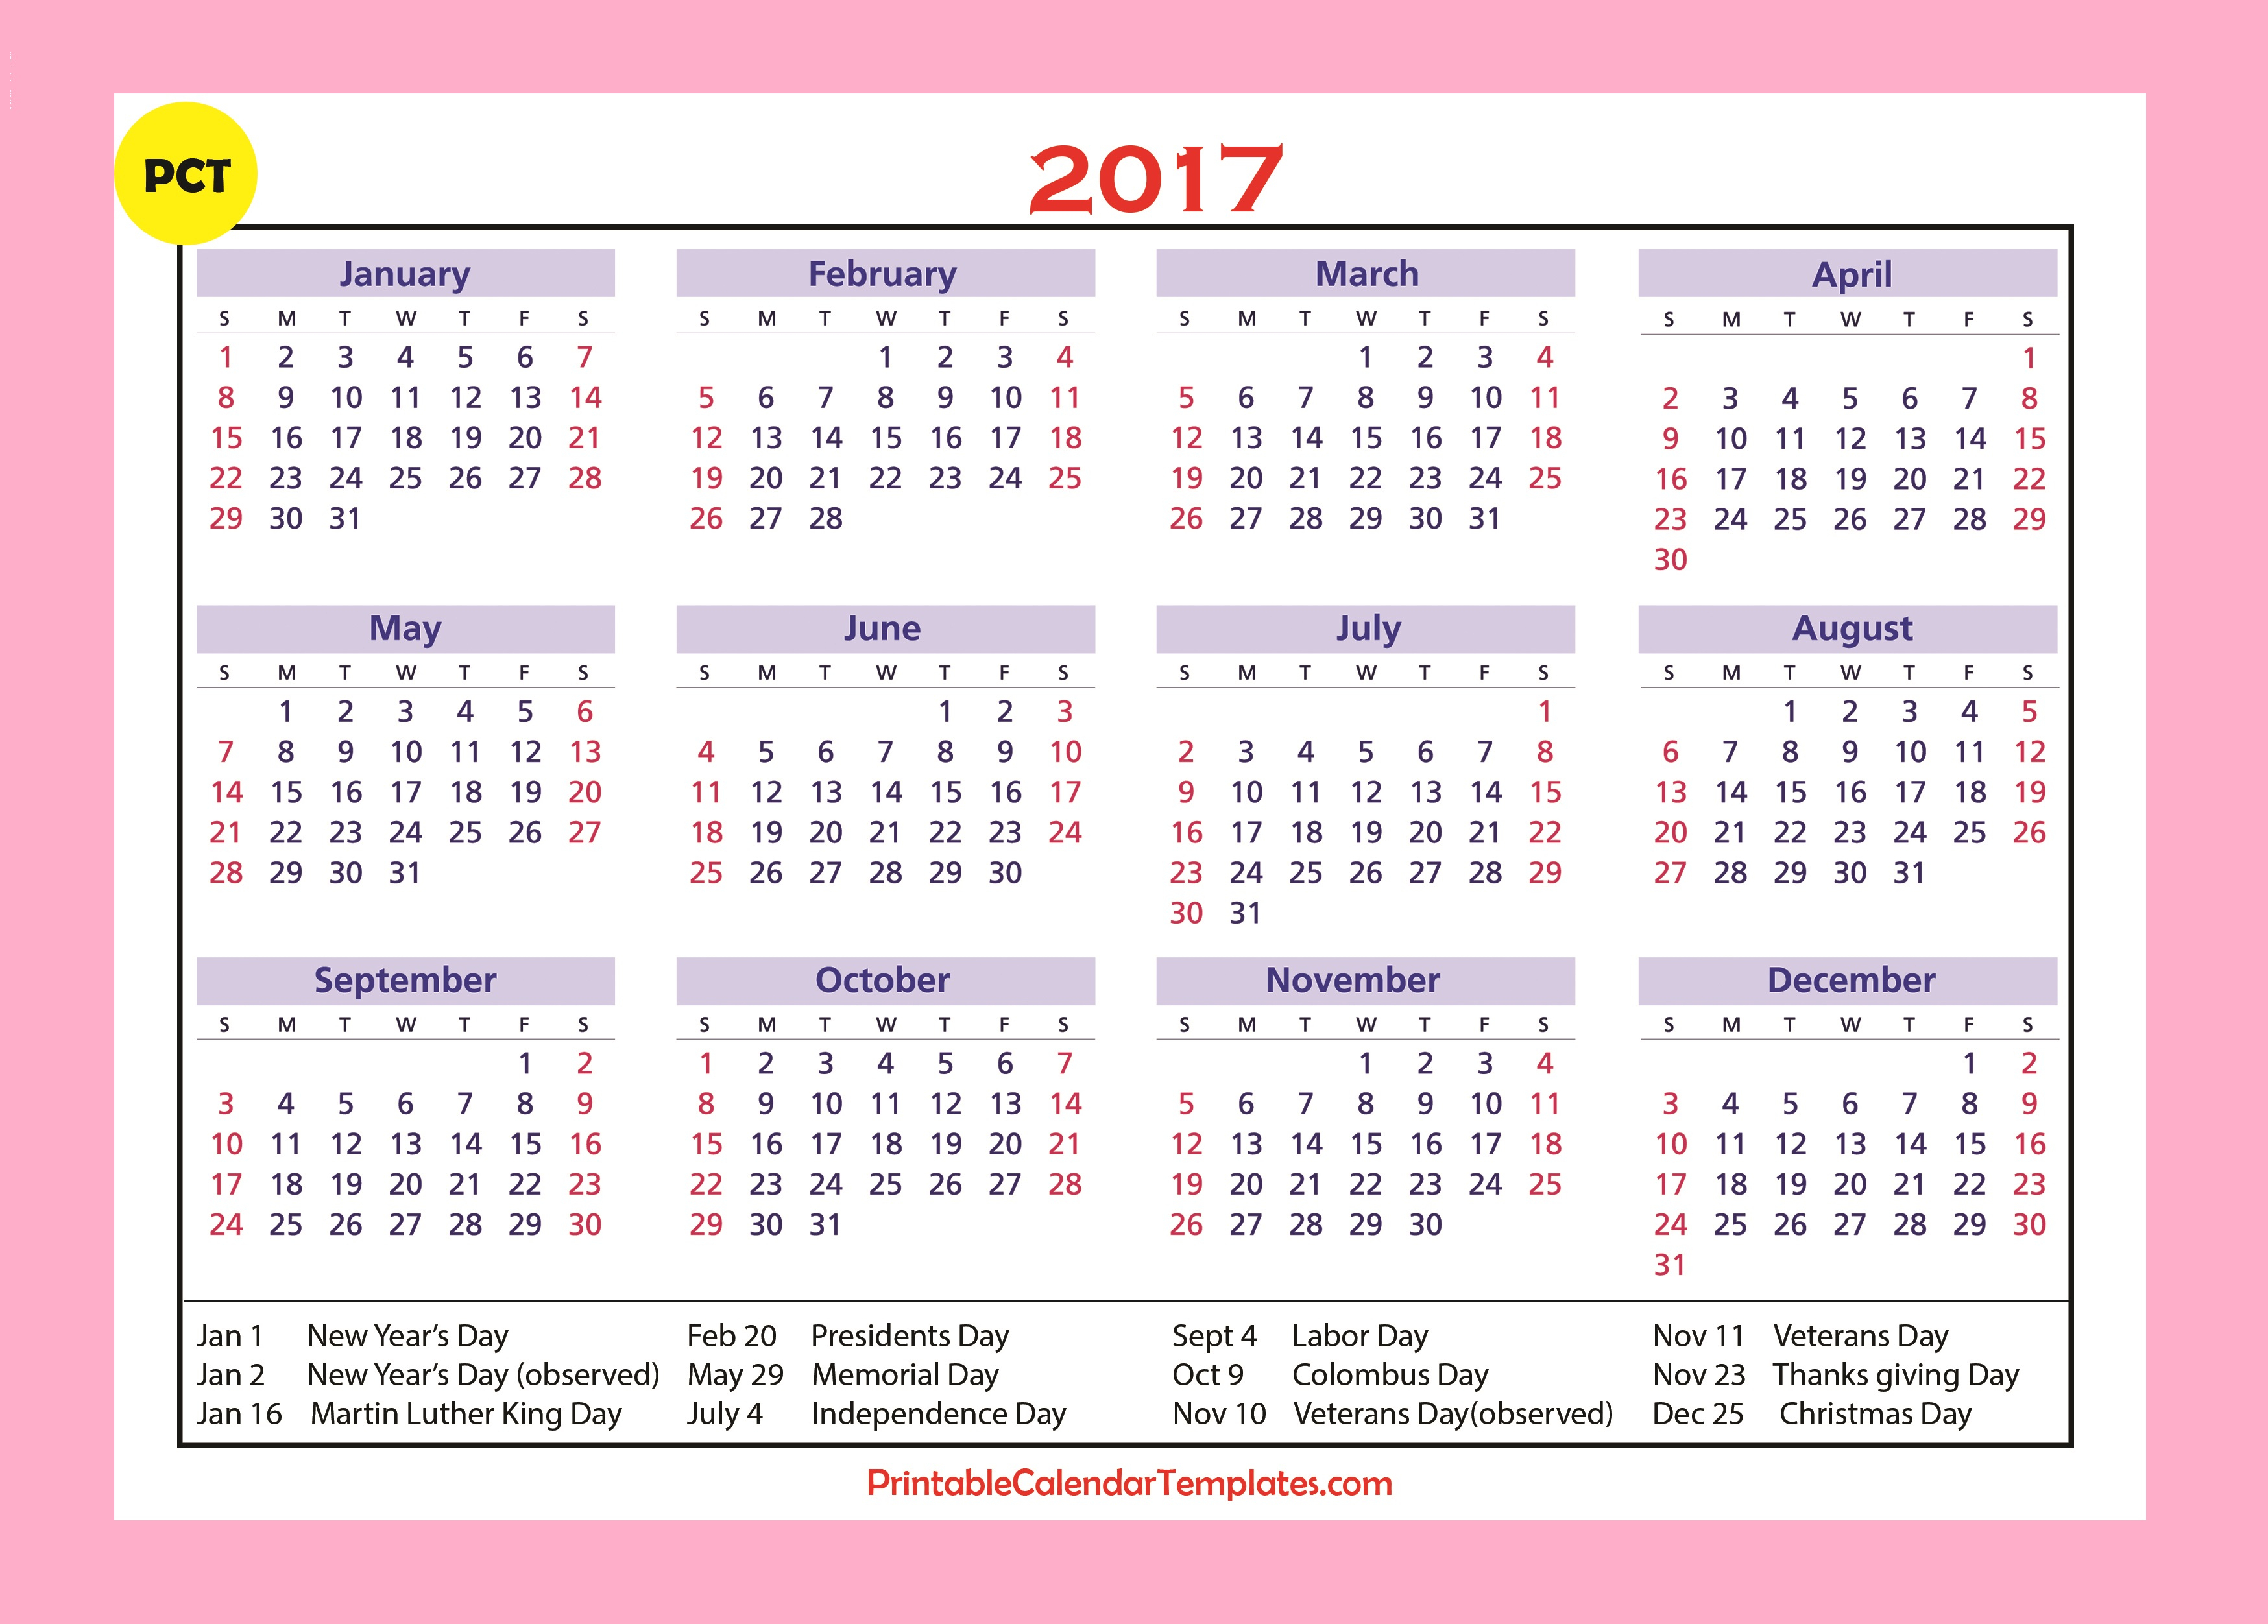 Holidayalendar 2017, 2017 Calendar, Yearly Calendar 2017 throughout Julian Calendar 2017